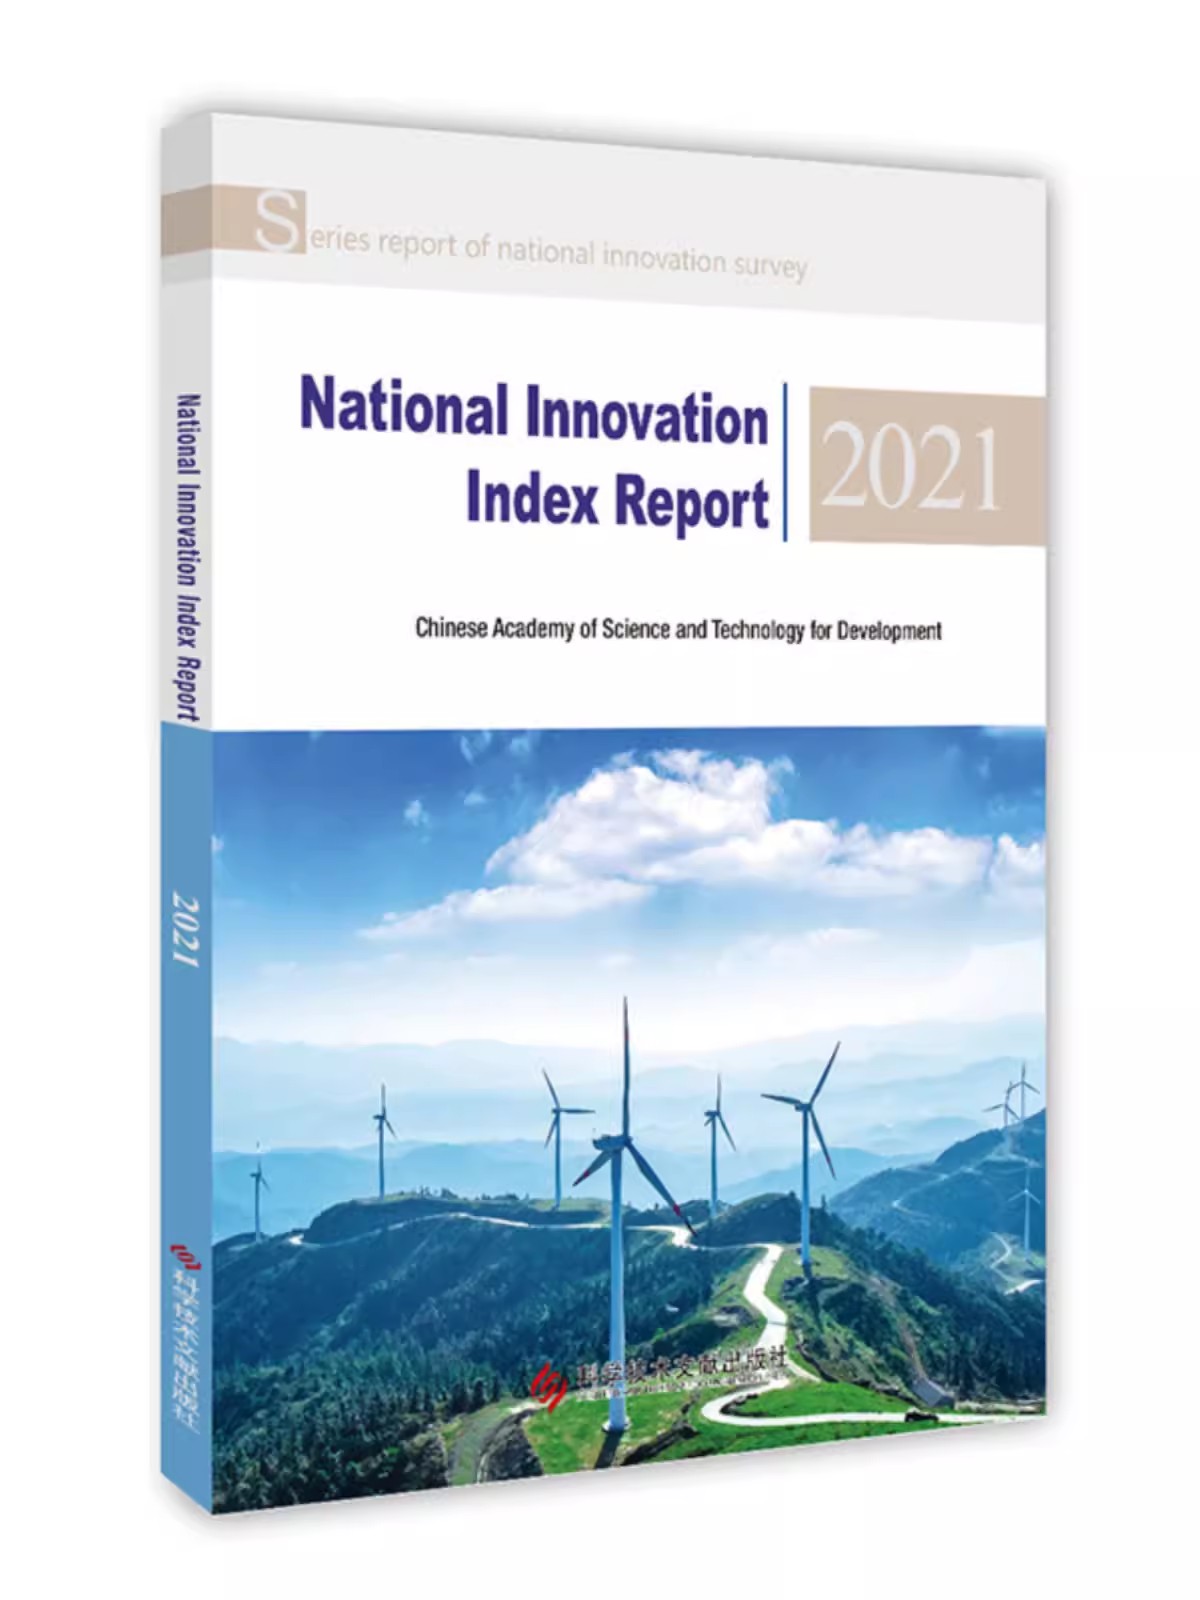 国家创新指数报告2021英文版National Innovation Index Report2021 中国科学技术发展战略研究院科学技术文献出版社9787518996902